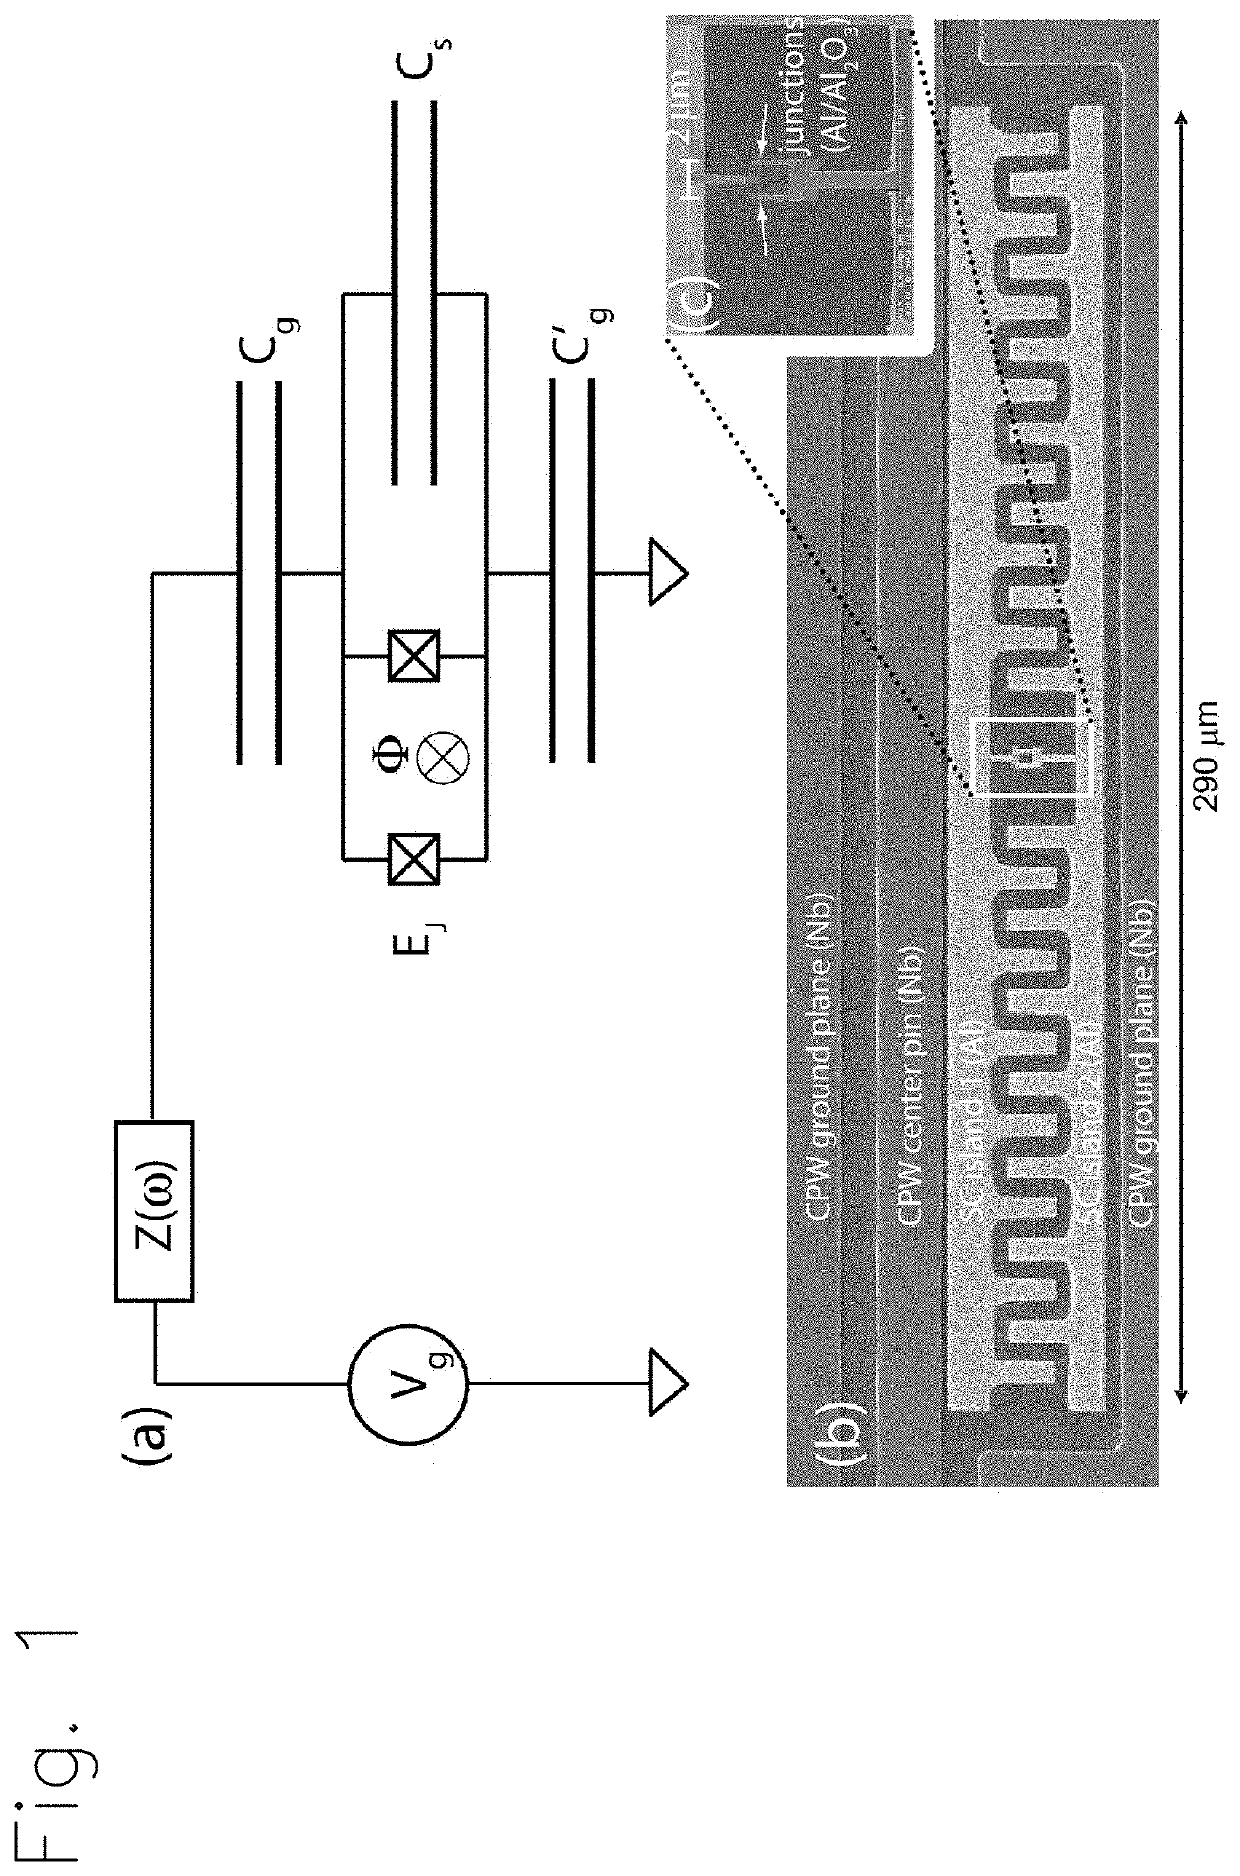 A qubit apparatus and a qubit system